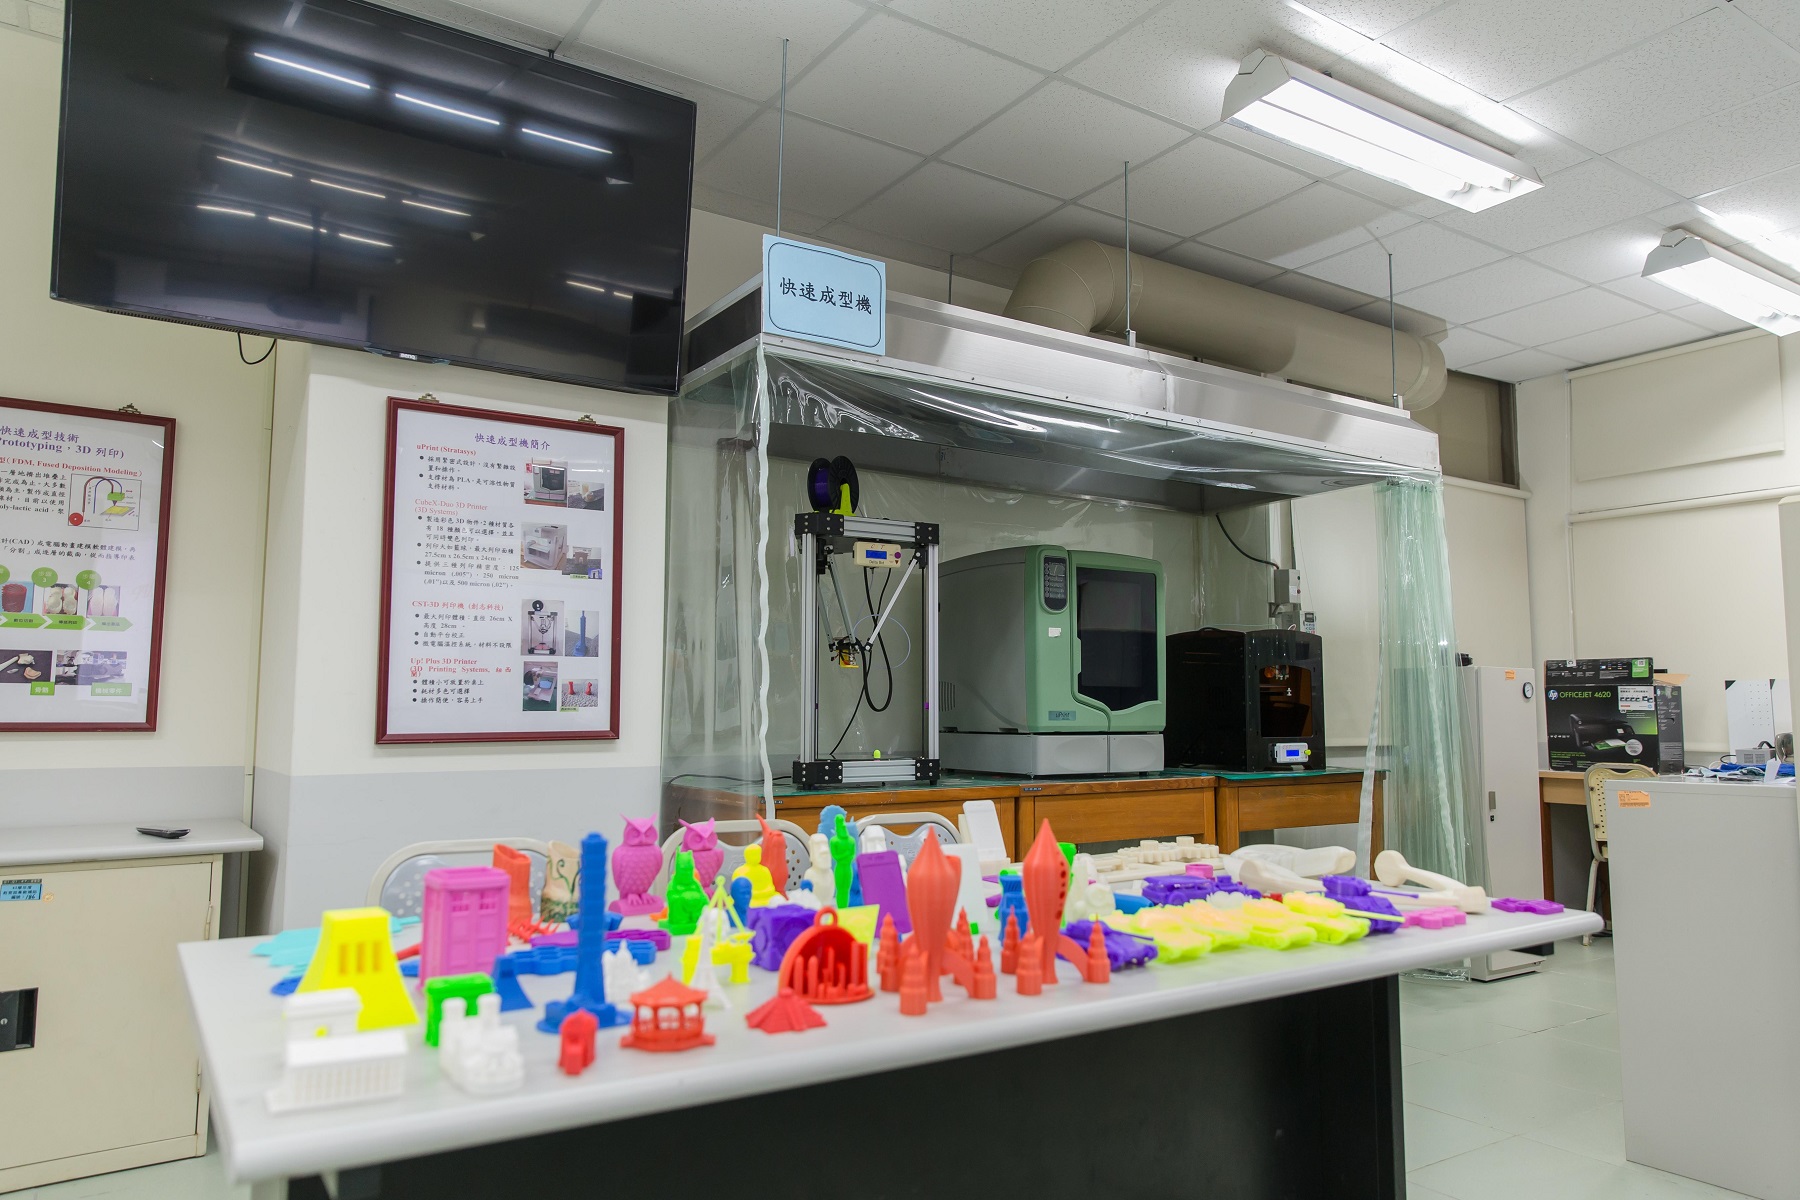 工管系添購3D光柵掃描儀器、快速成型機，學生可以實際操作3D快速成形設備，製作各種3D立體模型